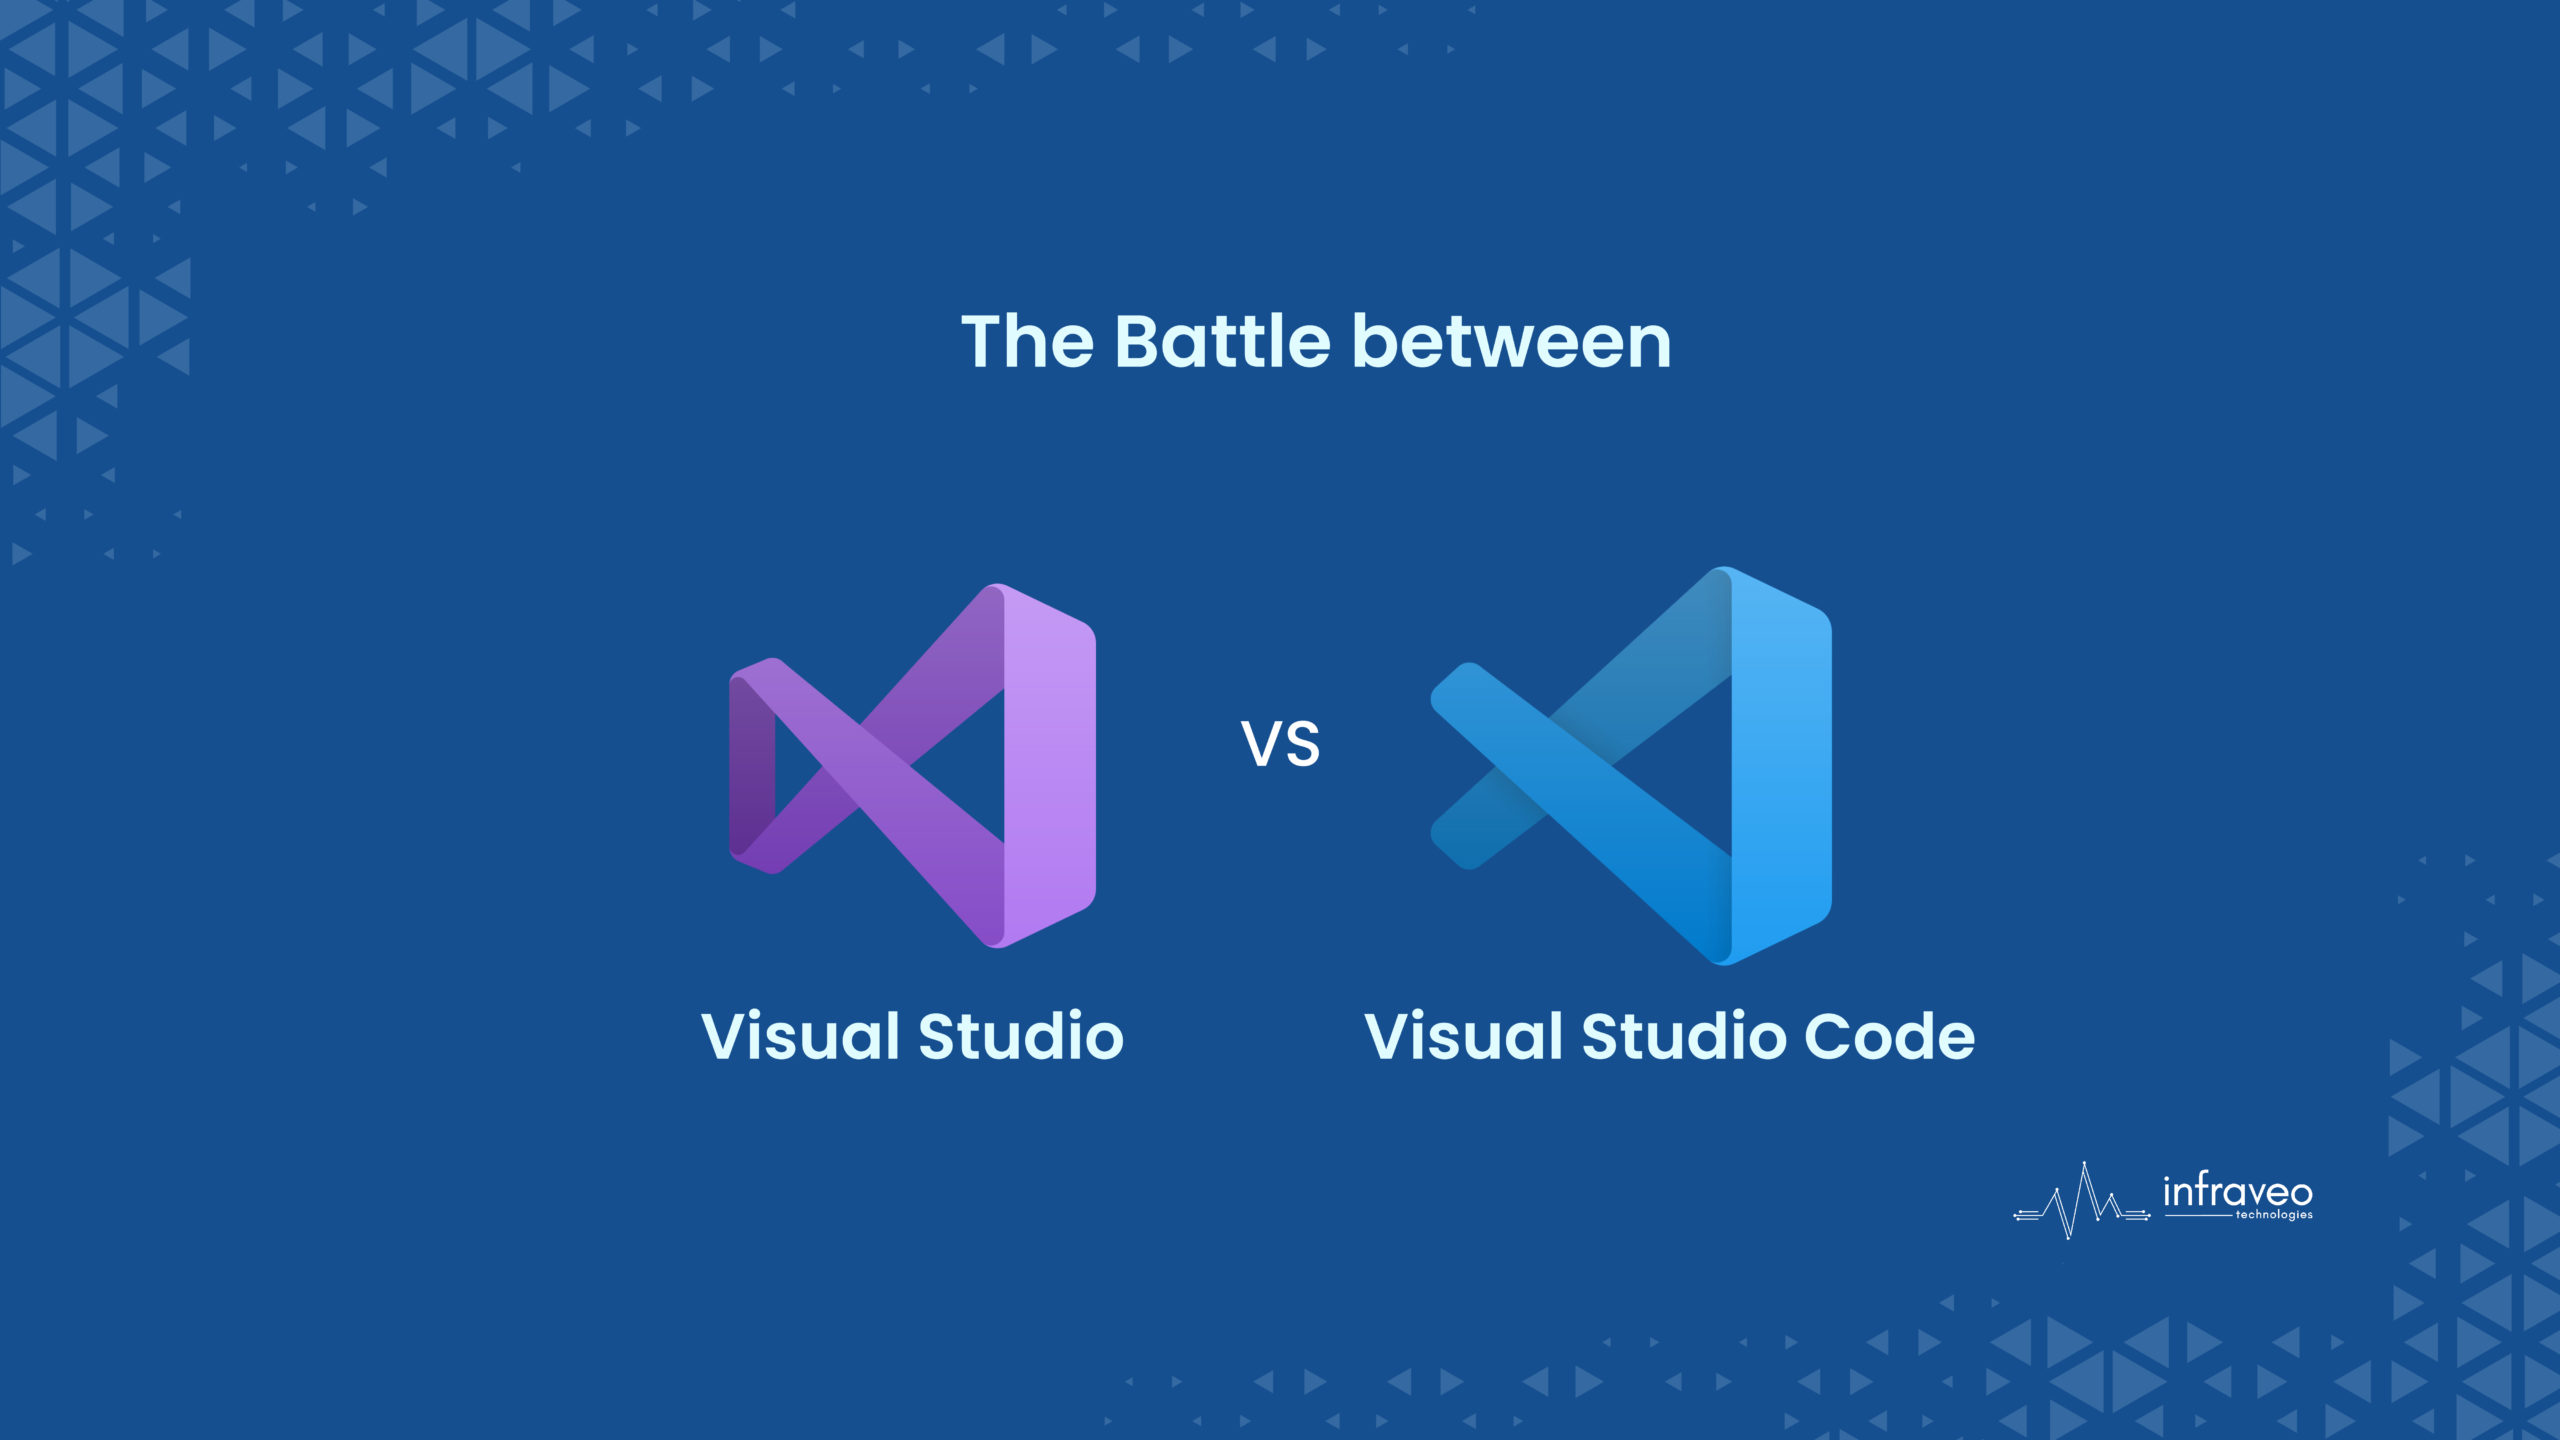 VS vs VS Code Blog Image